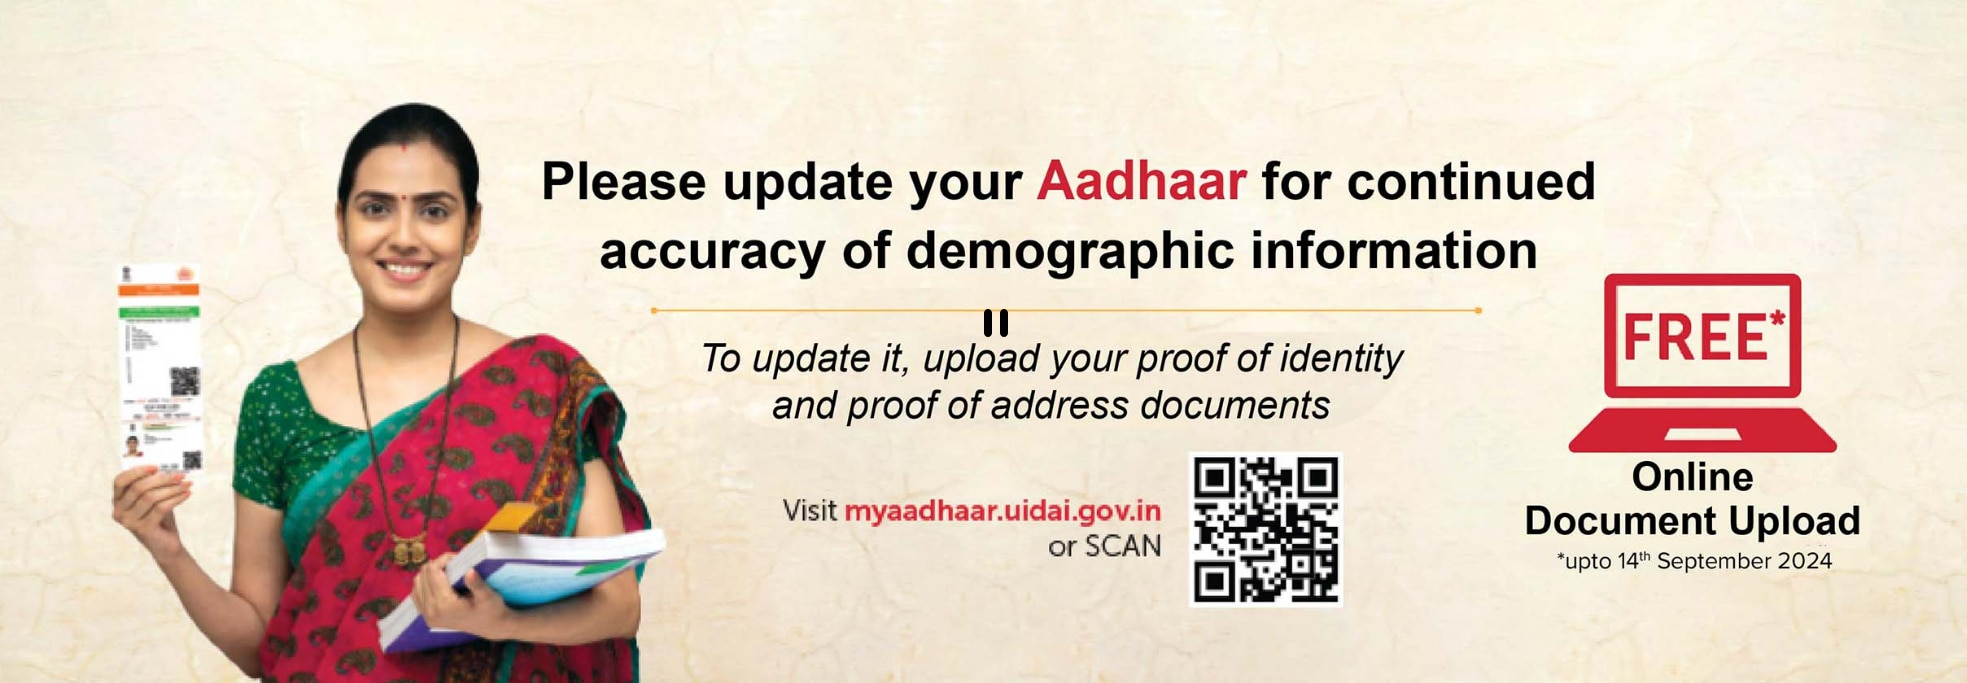 aadhaar update 